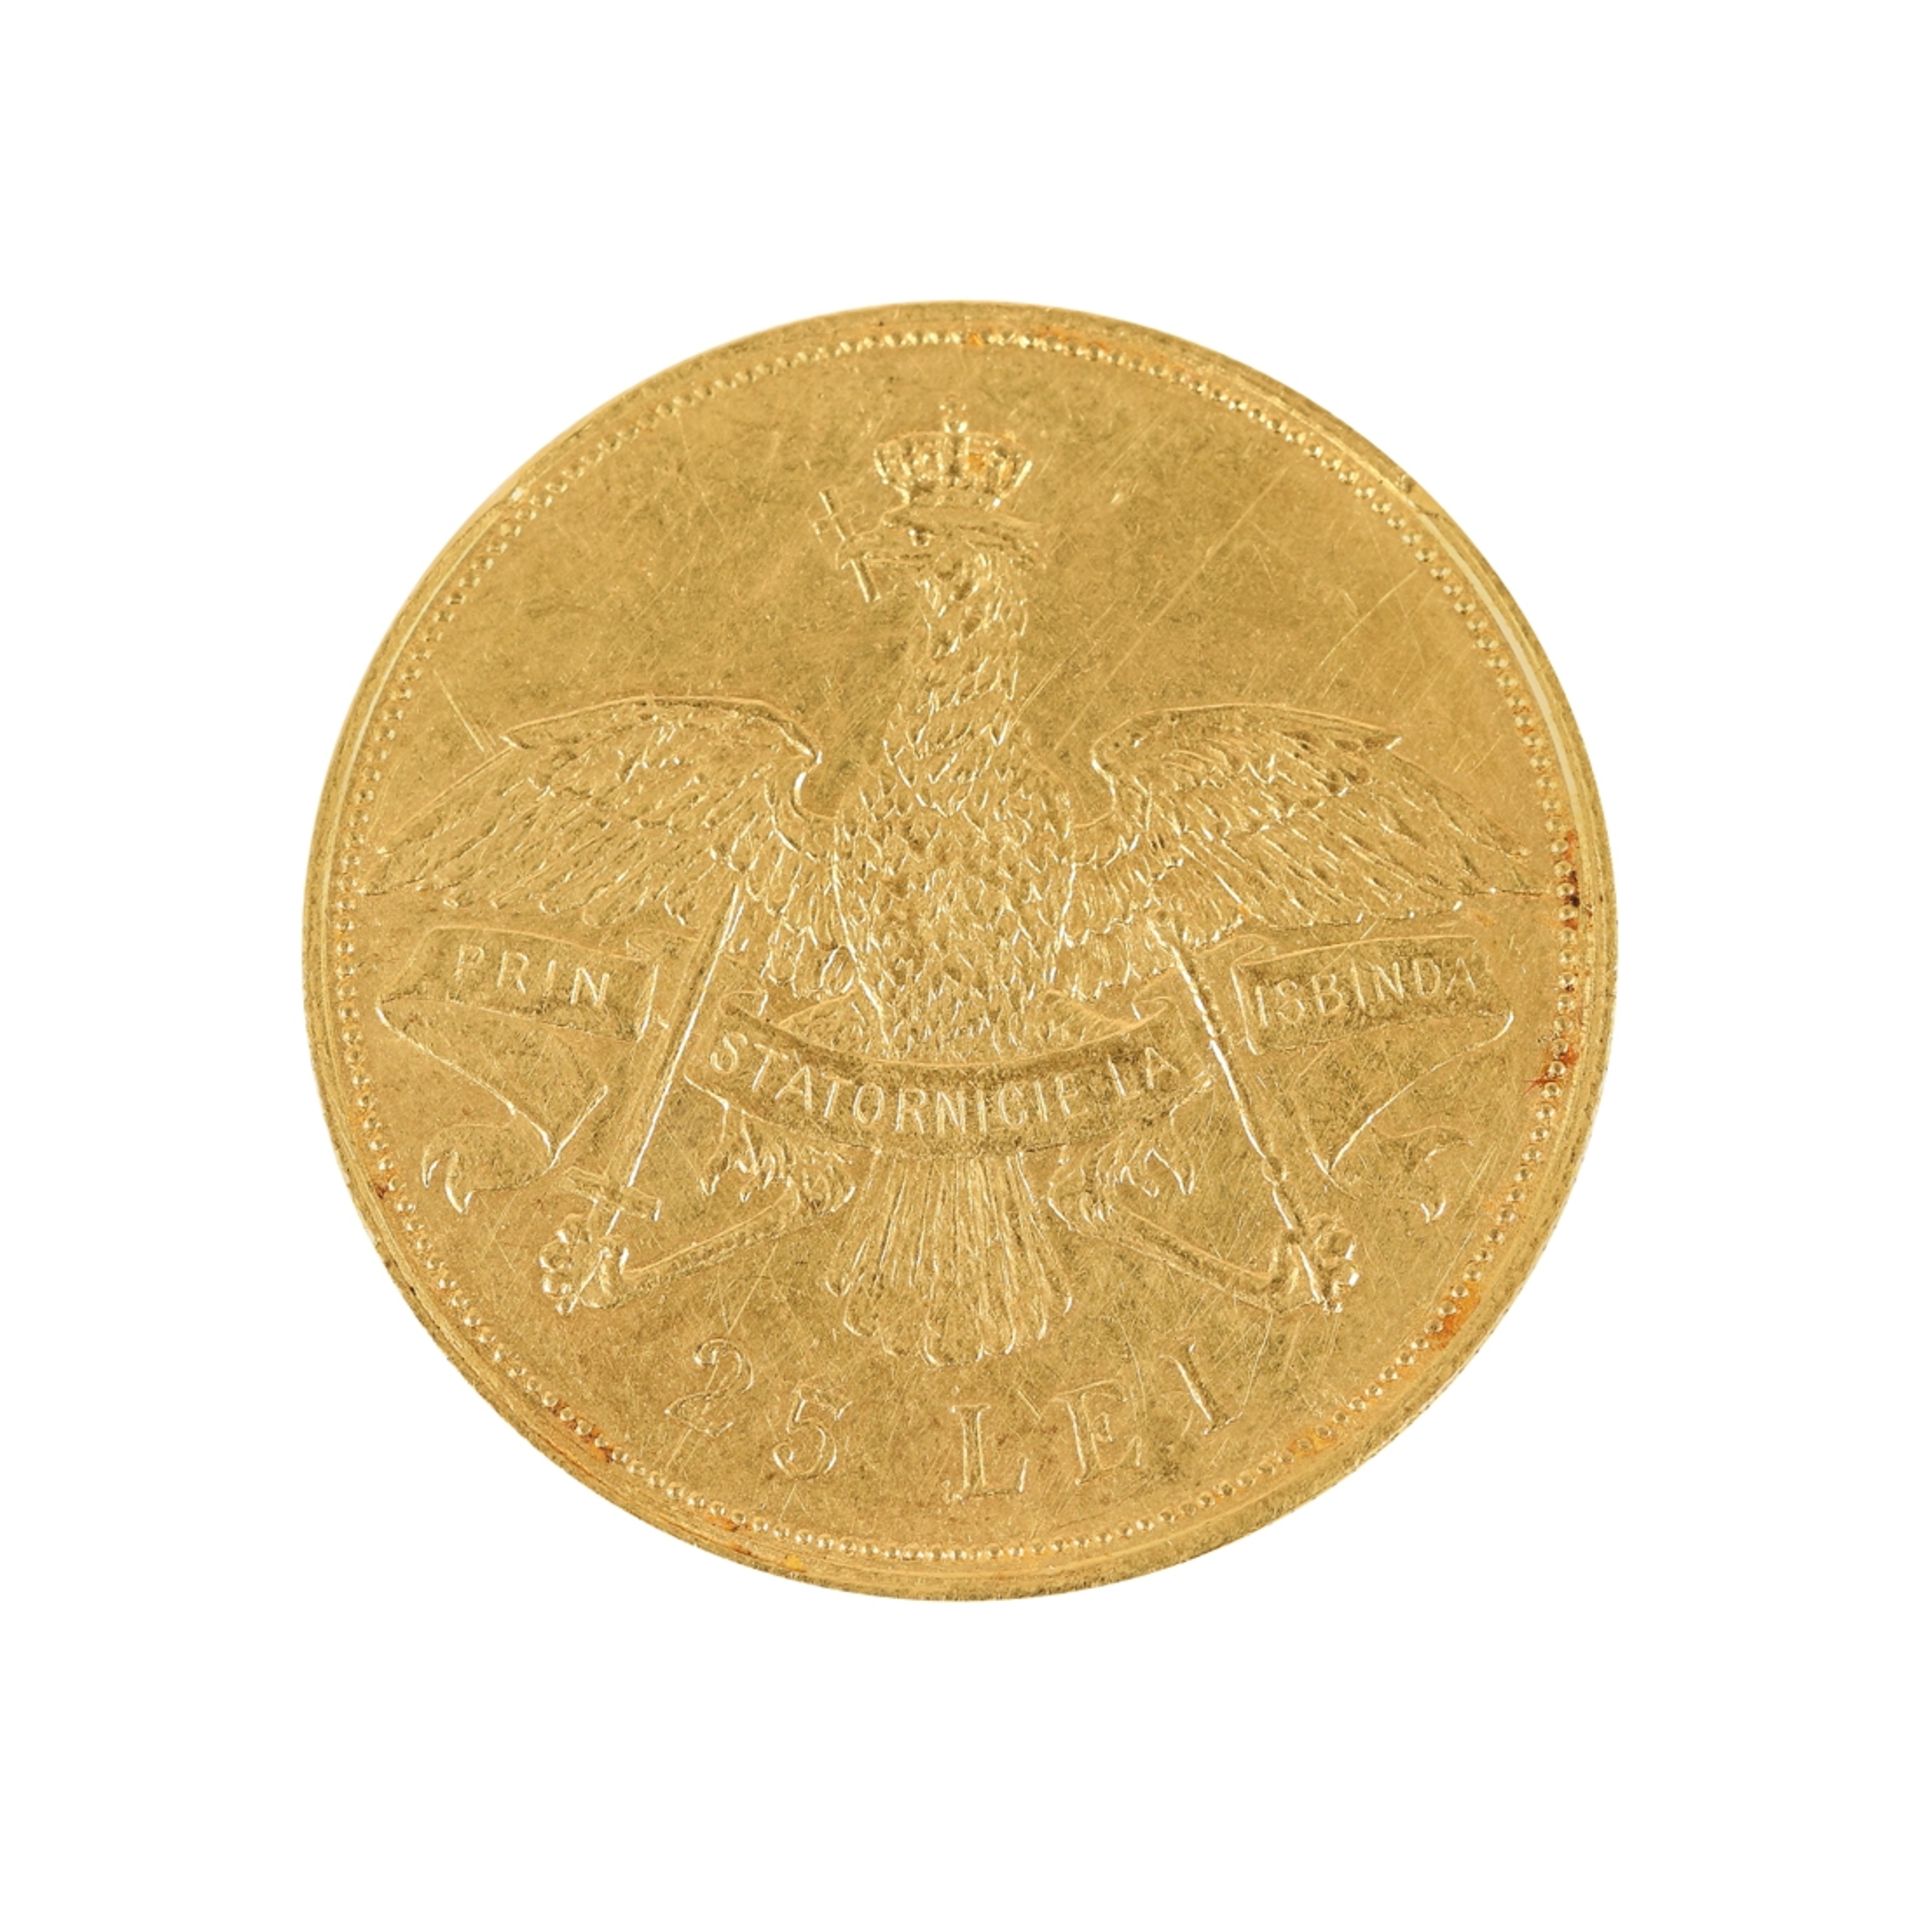 25 Lei 1906 coin, gold